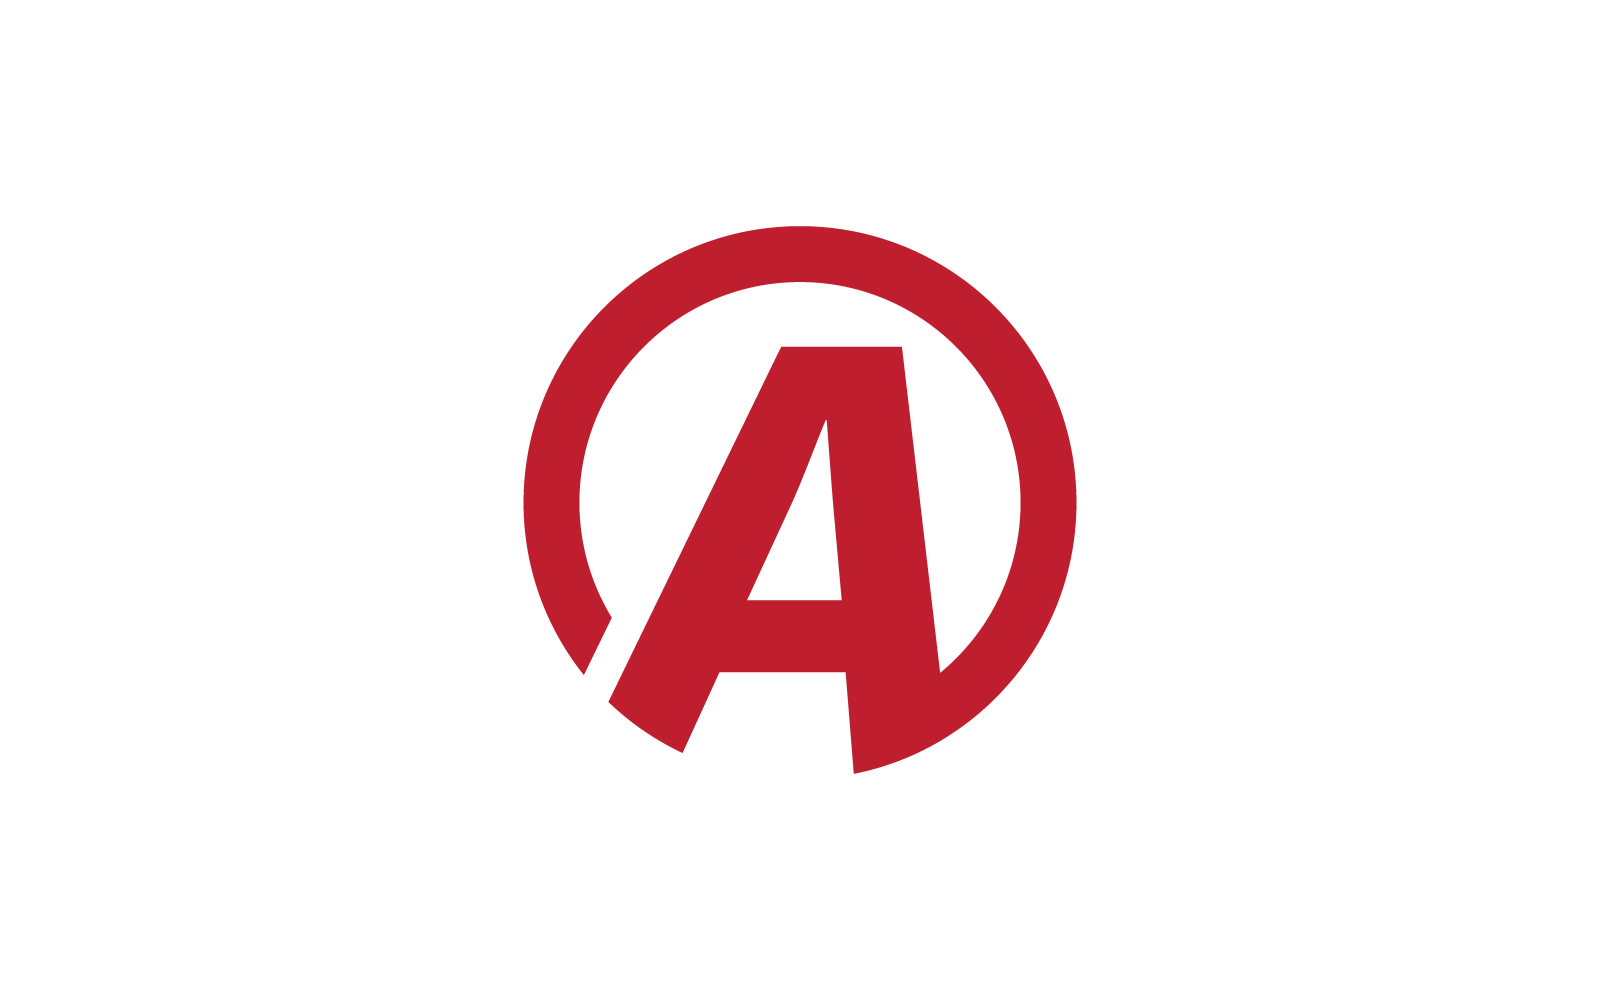 Modern A Initial letter alphabet font logo vector design